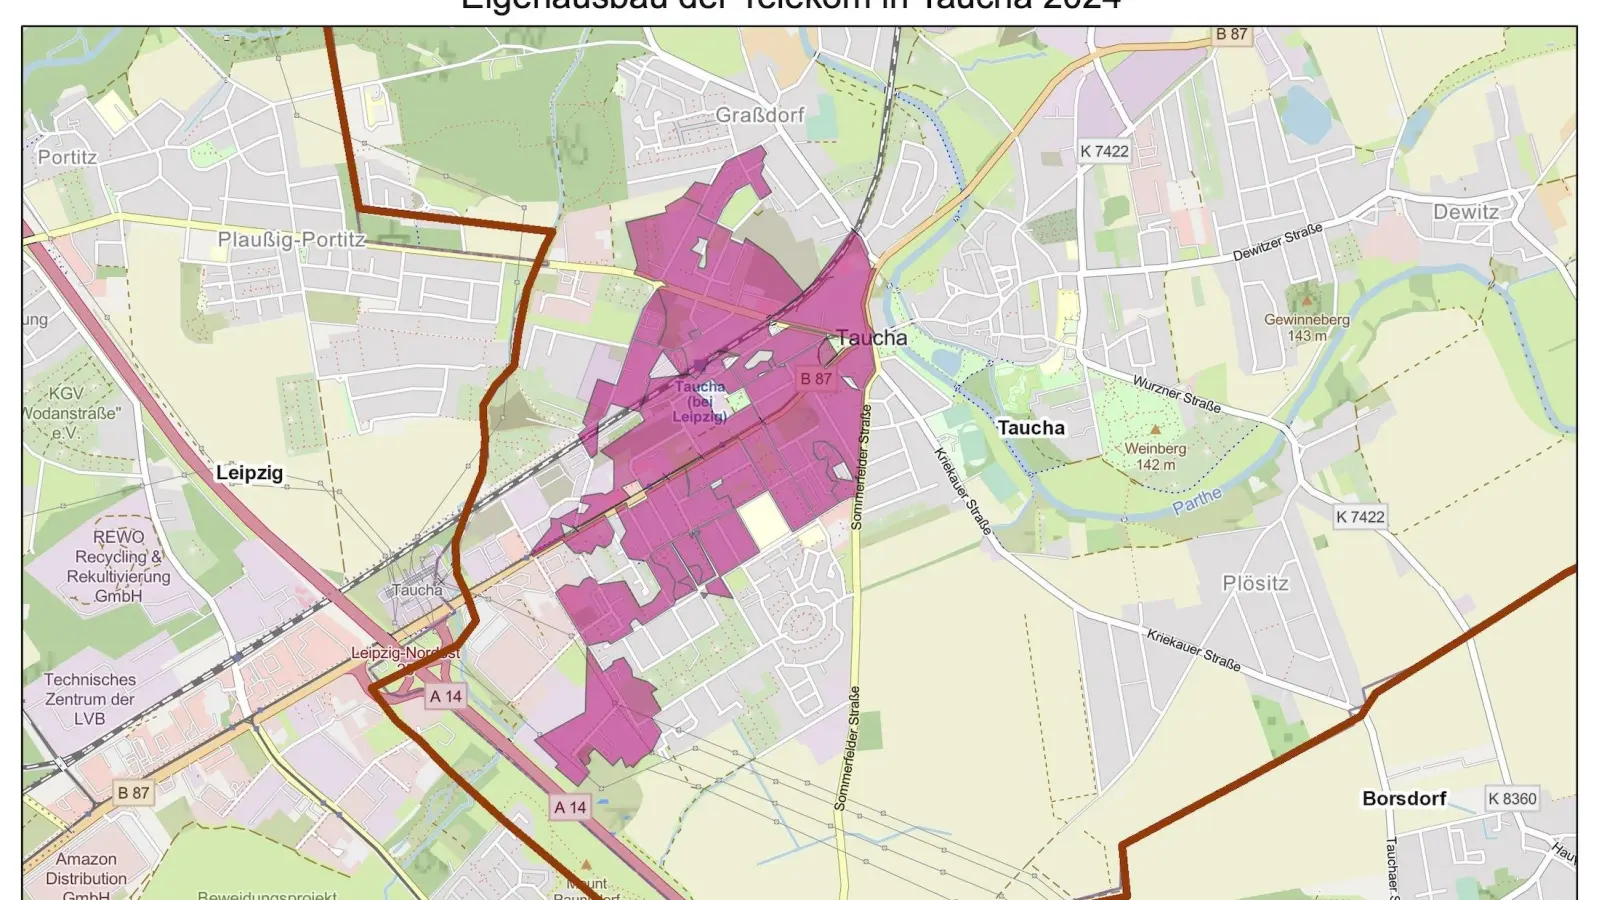 Das geplante Ausbaugebiet der Telekom. (Foto: taucha-kompakt.de)